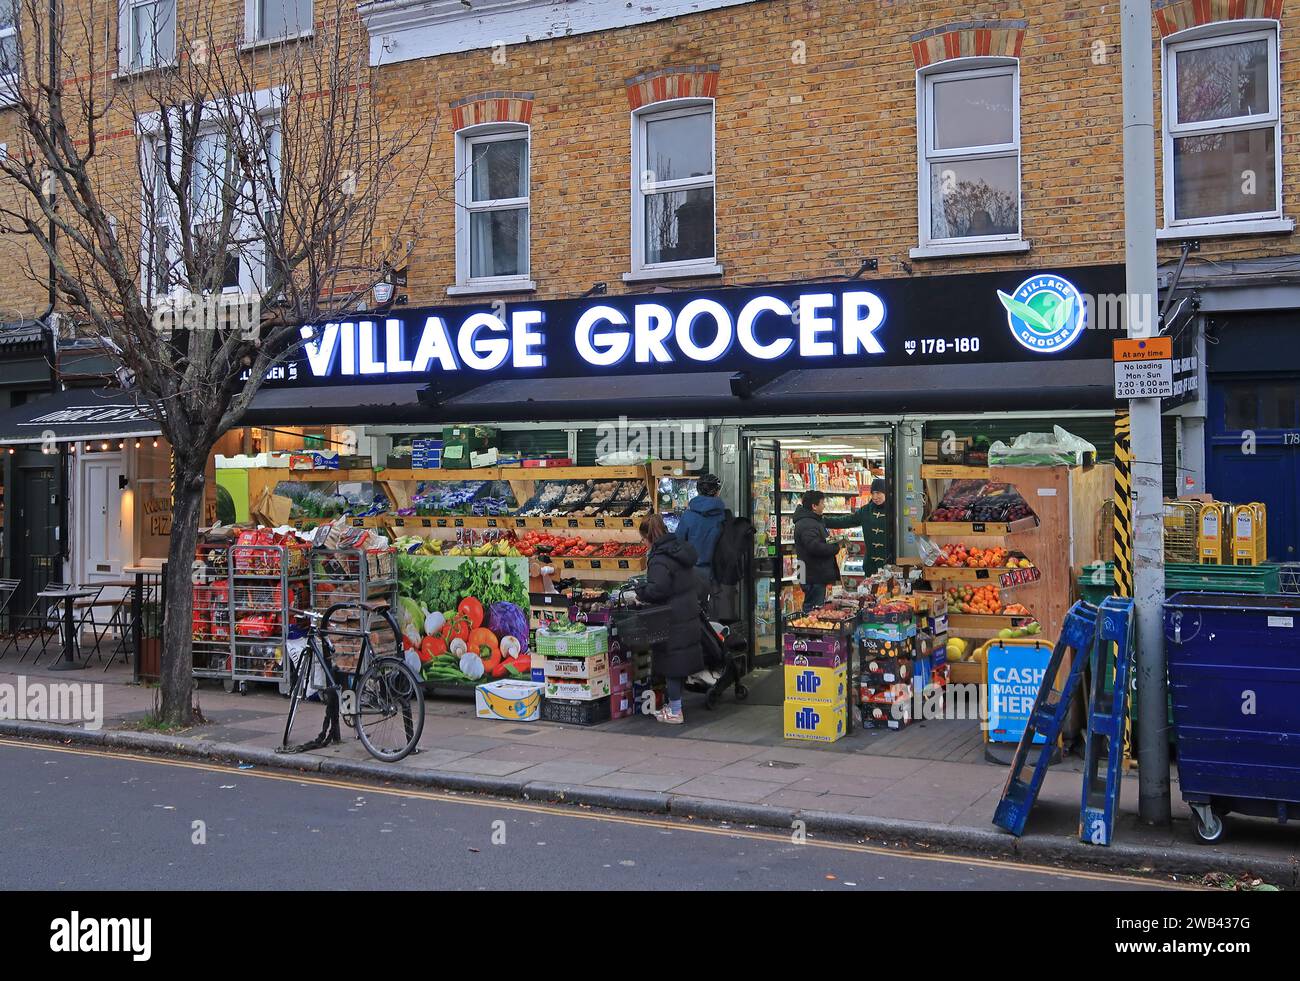 Village Grocer, der lokale Supermarkt an der Bellenden Road, Peckham, Südosten von London, Großbritannien. Stockfoto